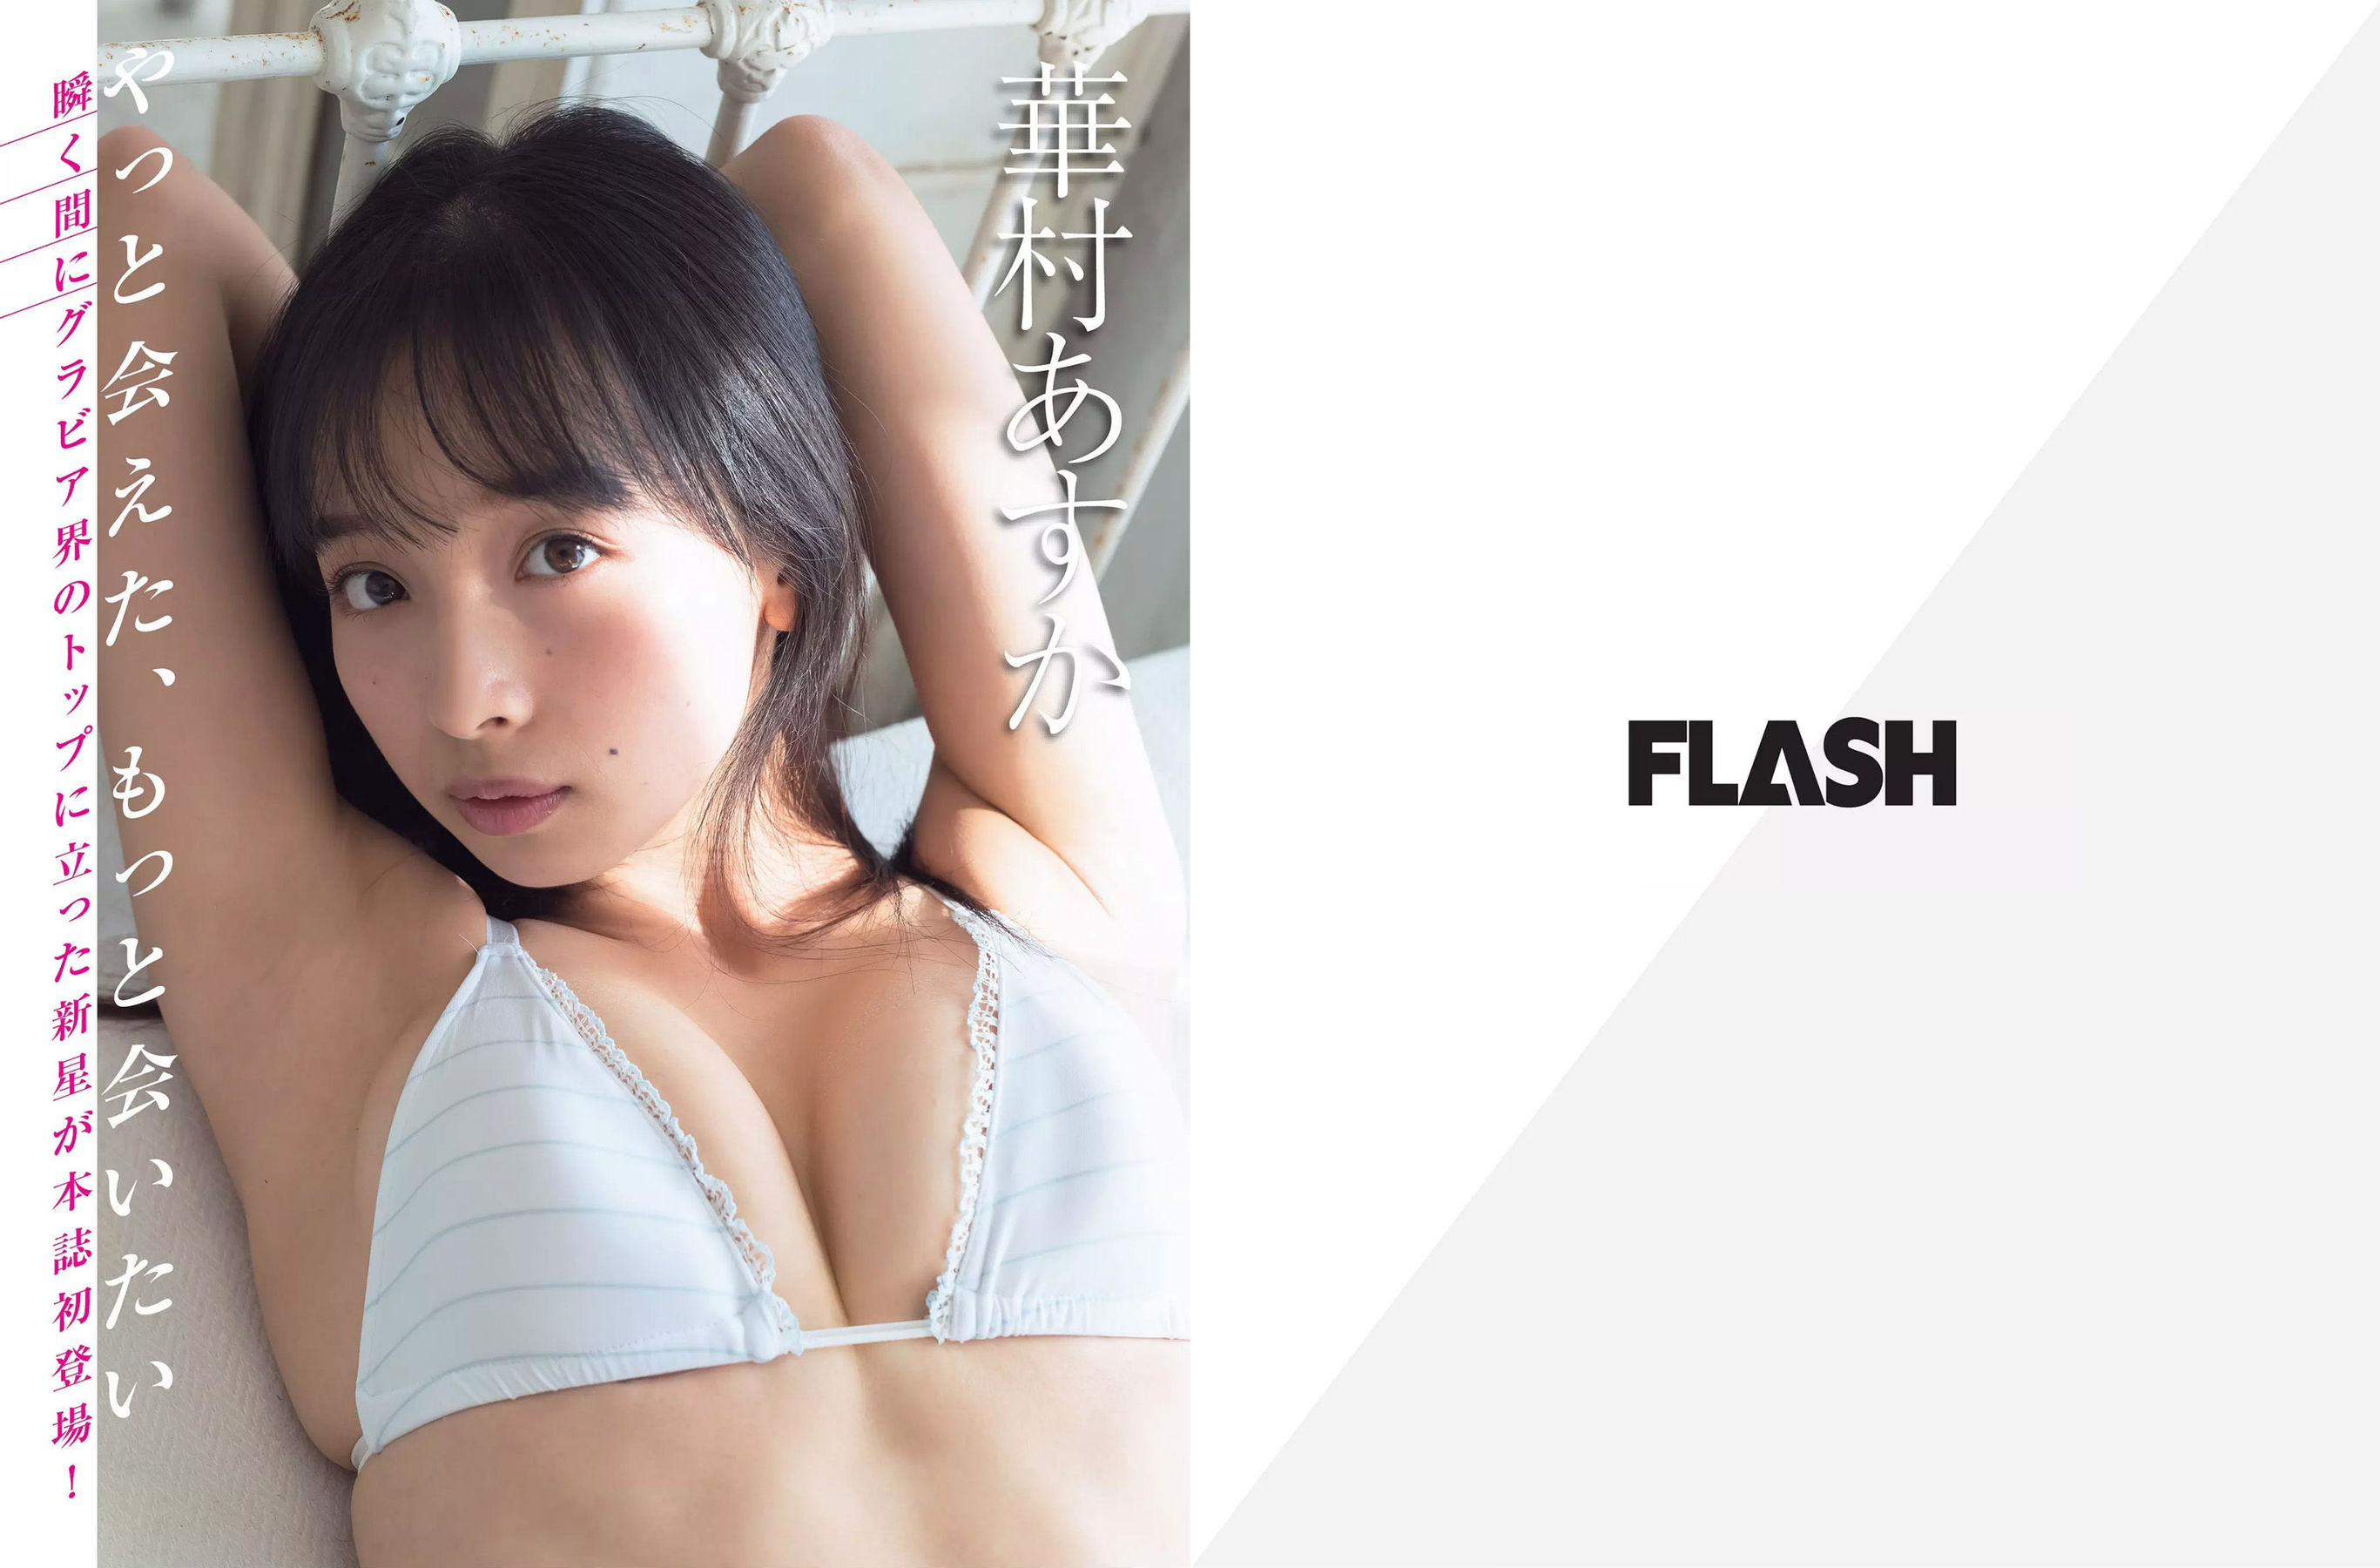 [FLASH]杂志:川崎绫高品质绝版网图珍藏版(19P)